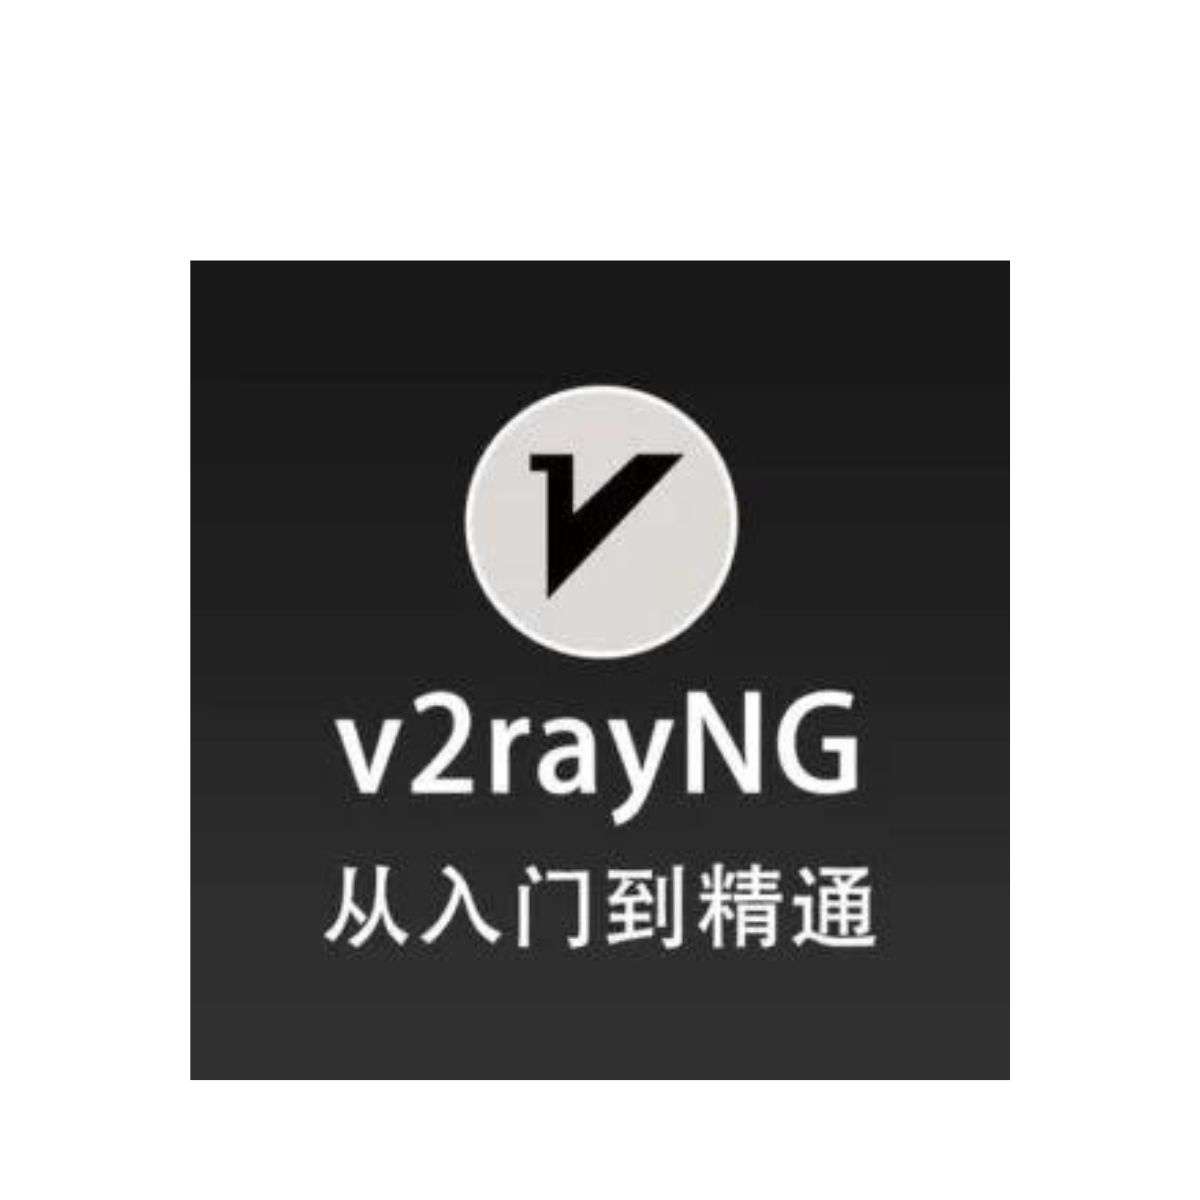 آموزش و روش کار با v2rayNG در اندرویدنحوه اضافه کردن کد و کانفیگ و سرور